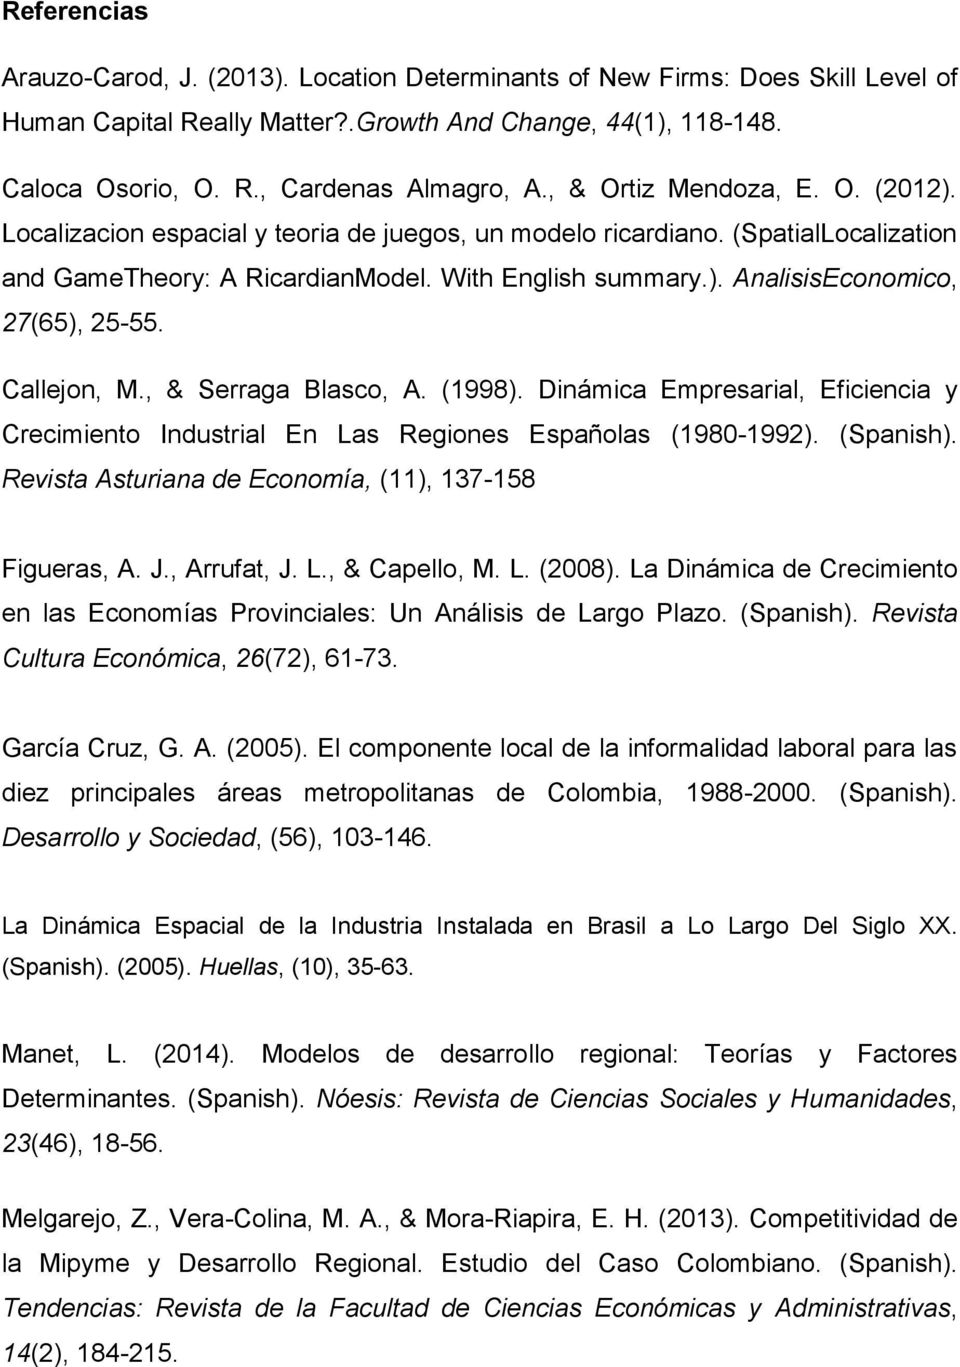 Callejon, M., & Serraga Blasco, A. (1998). Dinámica Empresarial, Eficiencia y Crecimiento Industrial En Las Regiones Españolas (1980-1992). (Spanish).